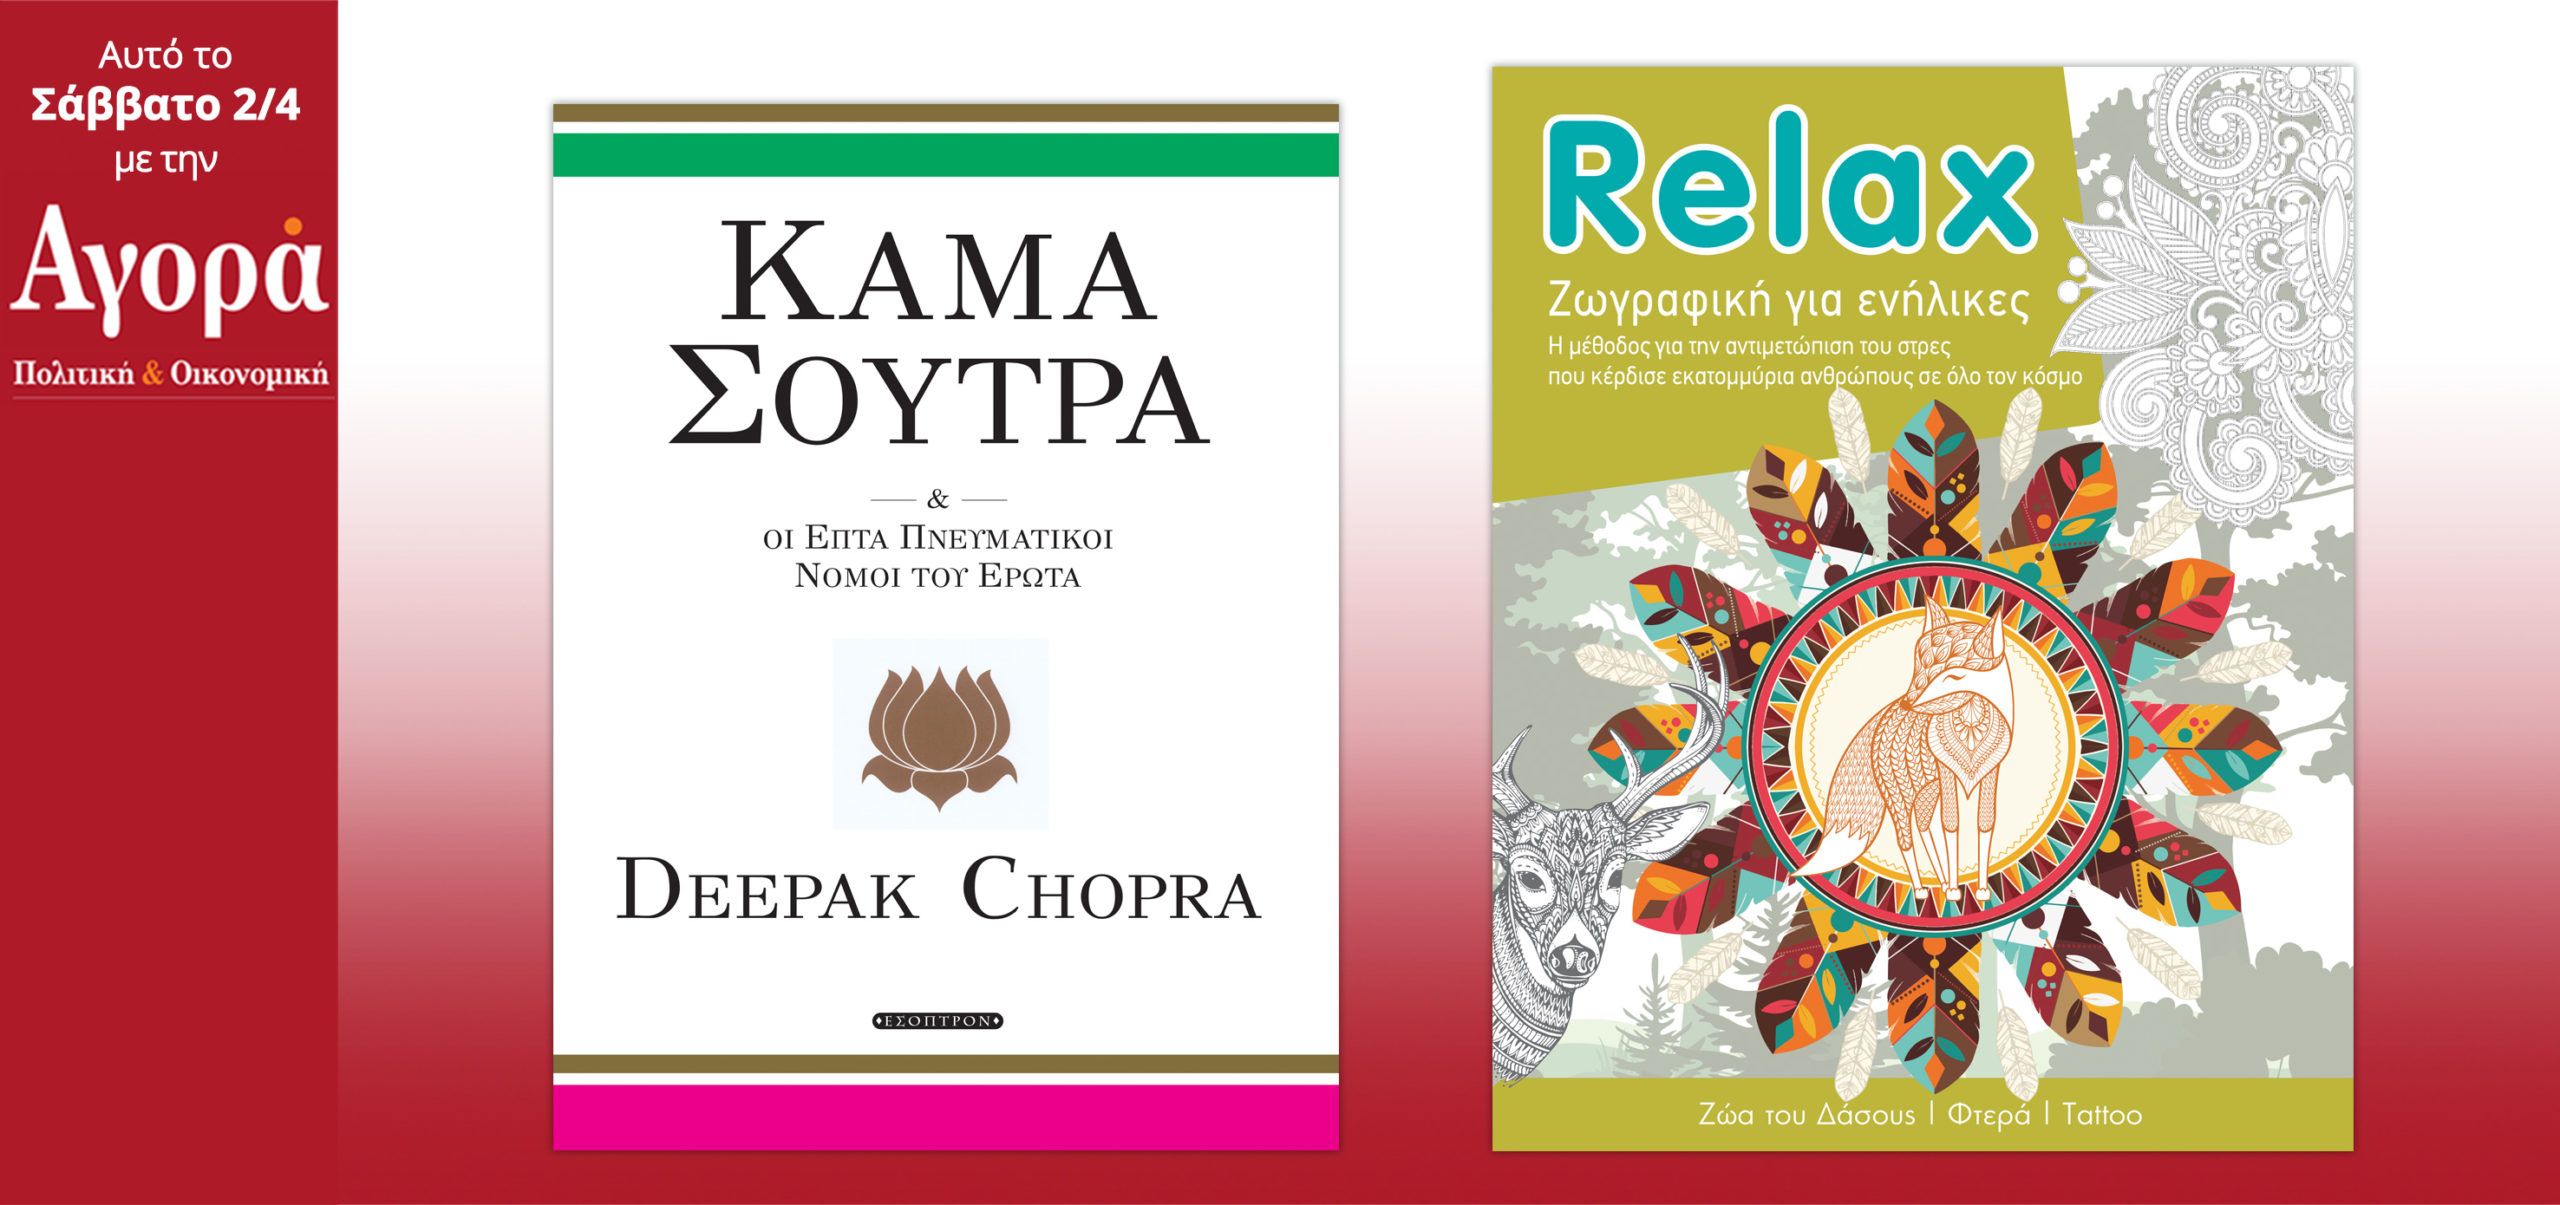 Σήμερα στην Αγορά: Deepak Chopra – Κάμα Σούτρα και Relax (Βιβλίο Anti-stress)